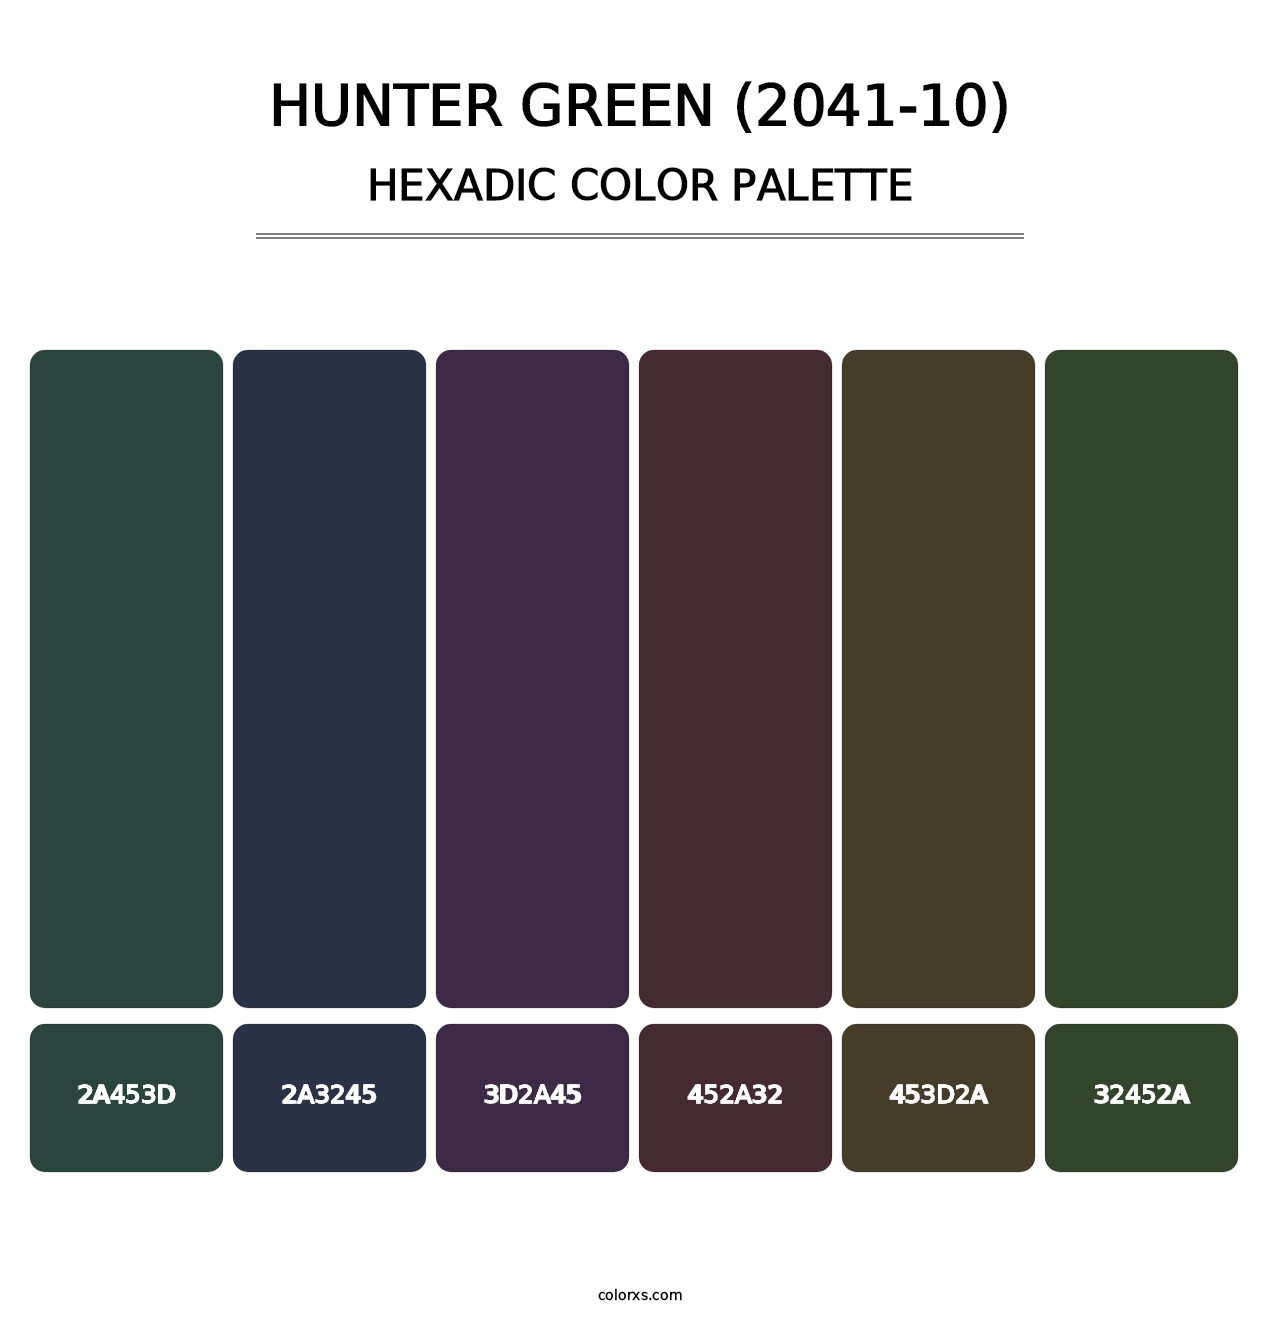 Hunter Green (2041-10) - Hexadic Color Palette